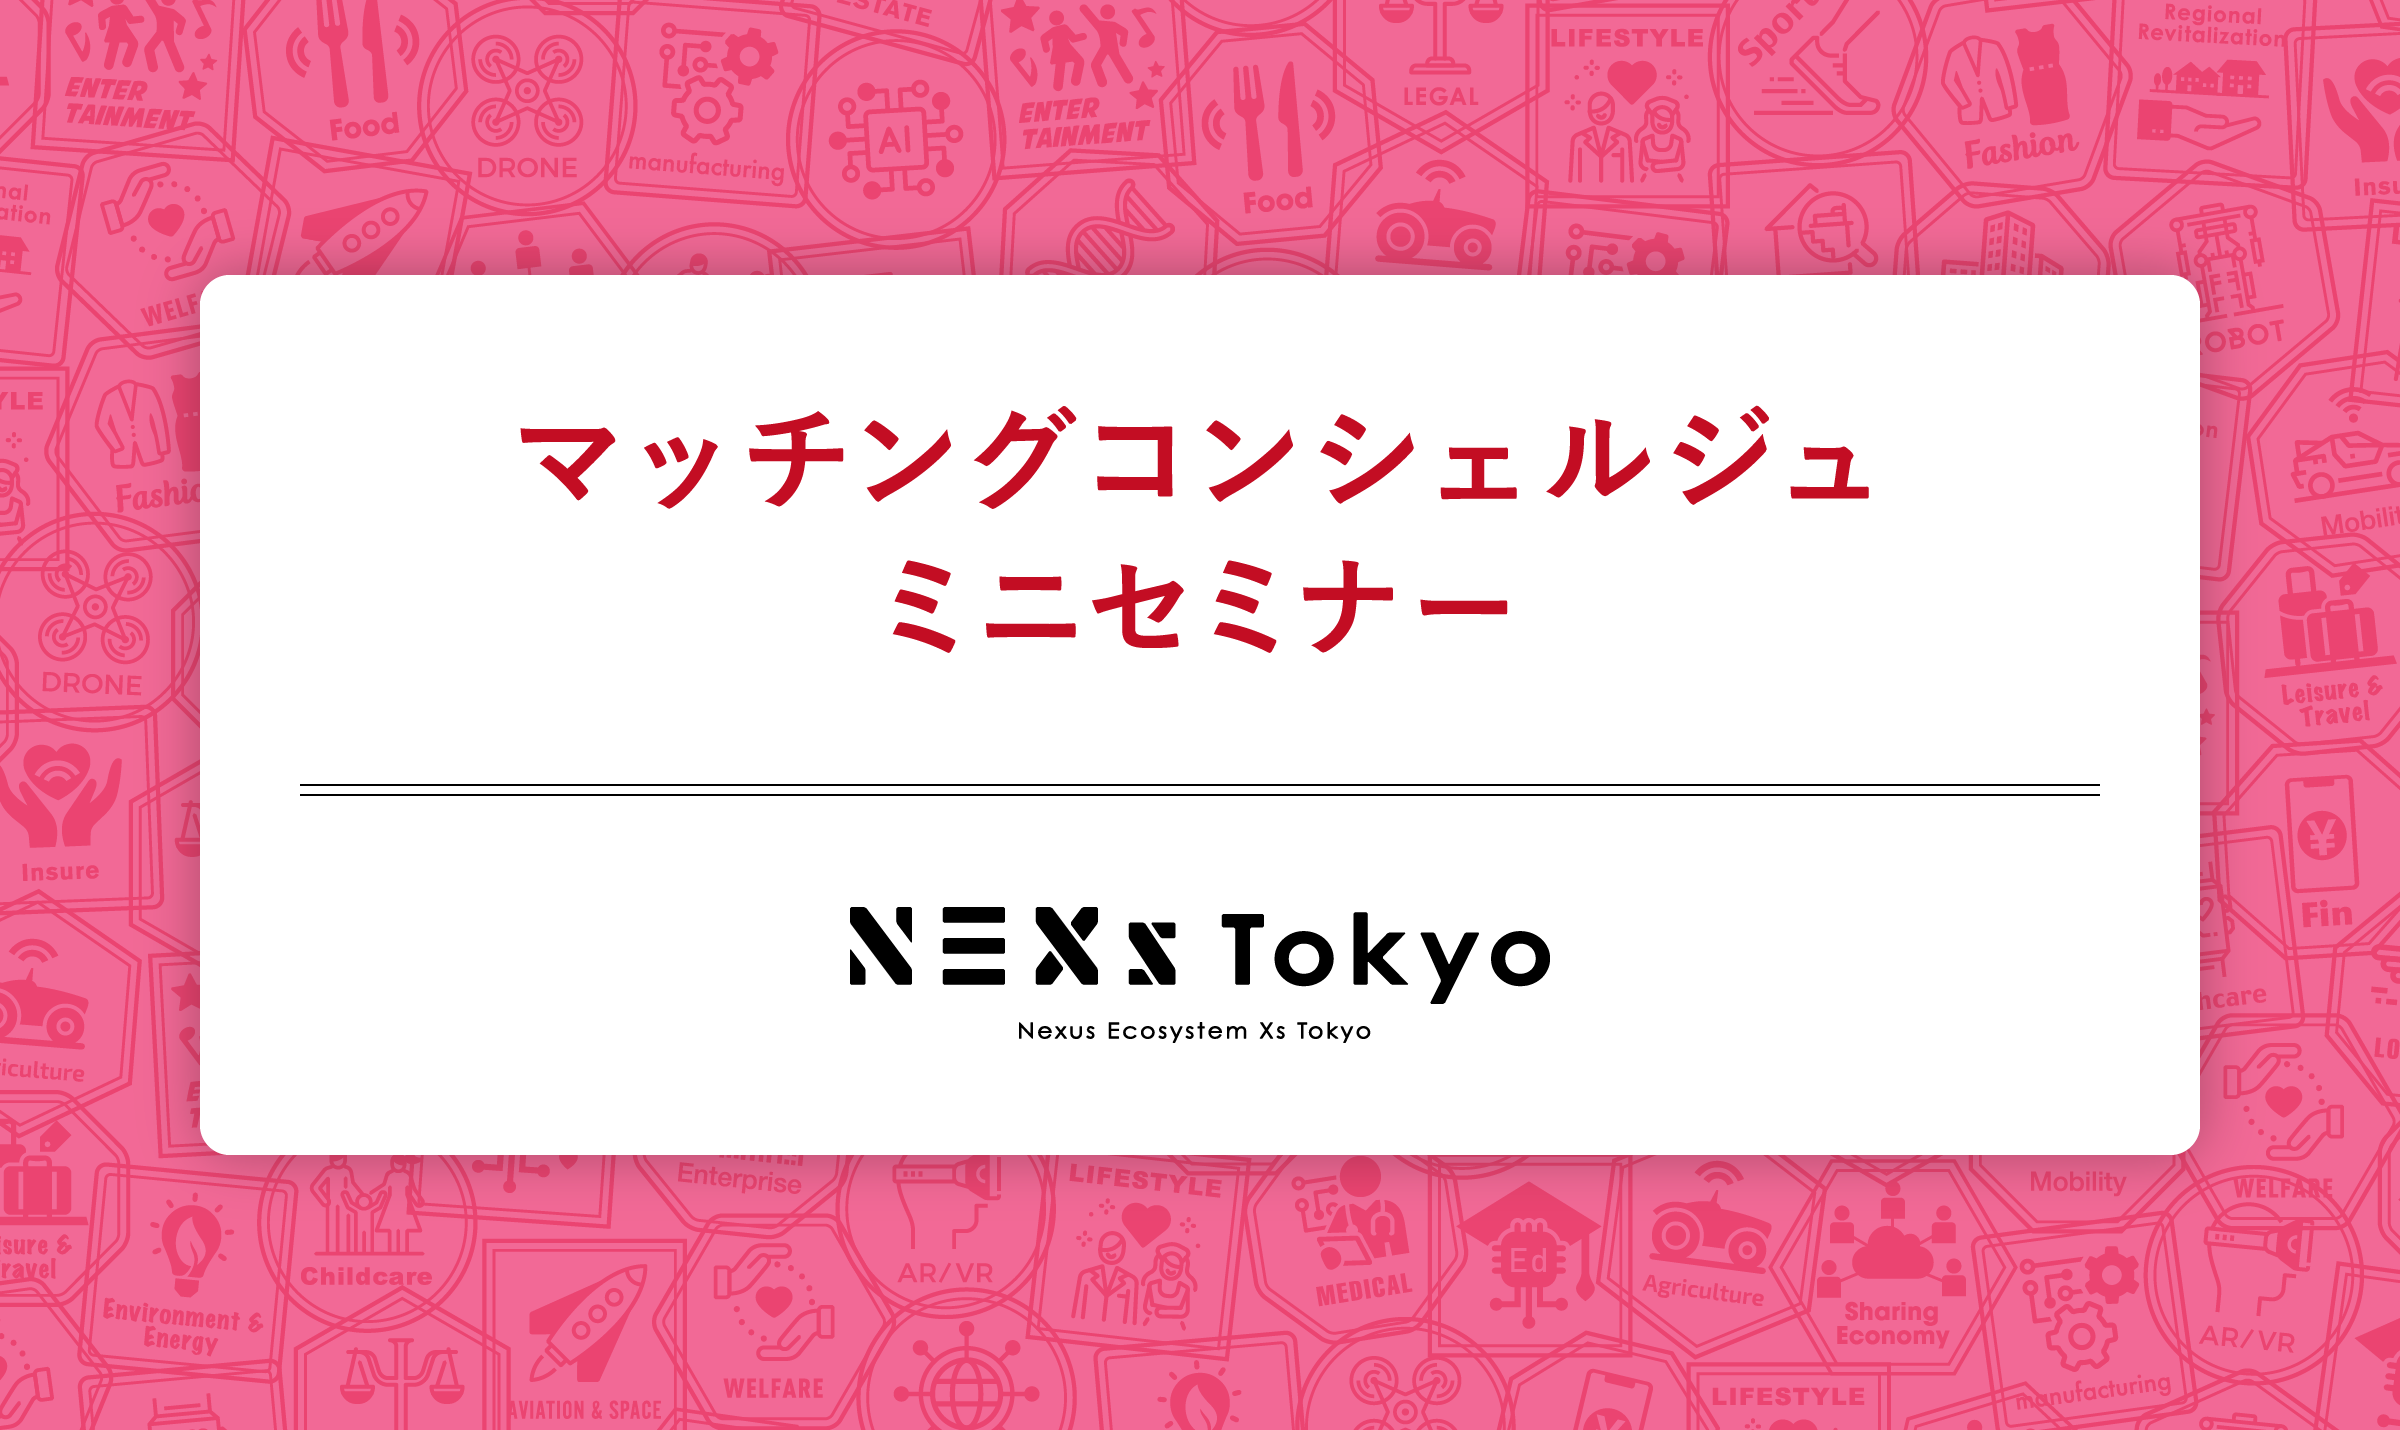 【会員限定】 広報・PR・提案力強化に役立つ情報整理ワークショップ byマッチングコンシェルジュ＠NEXs Tokyo